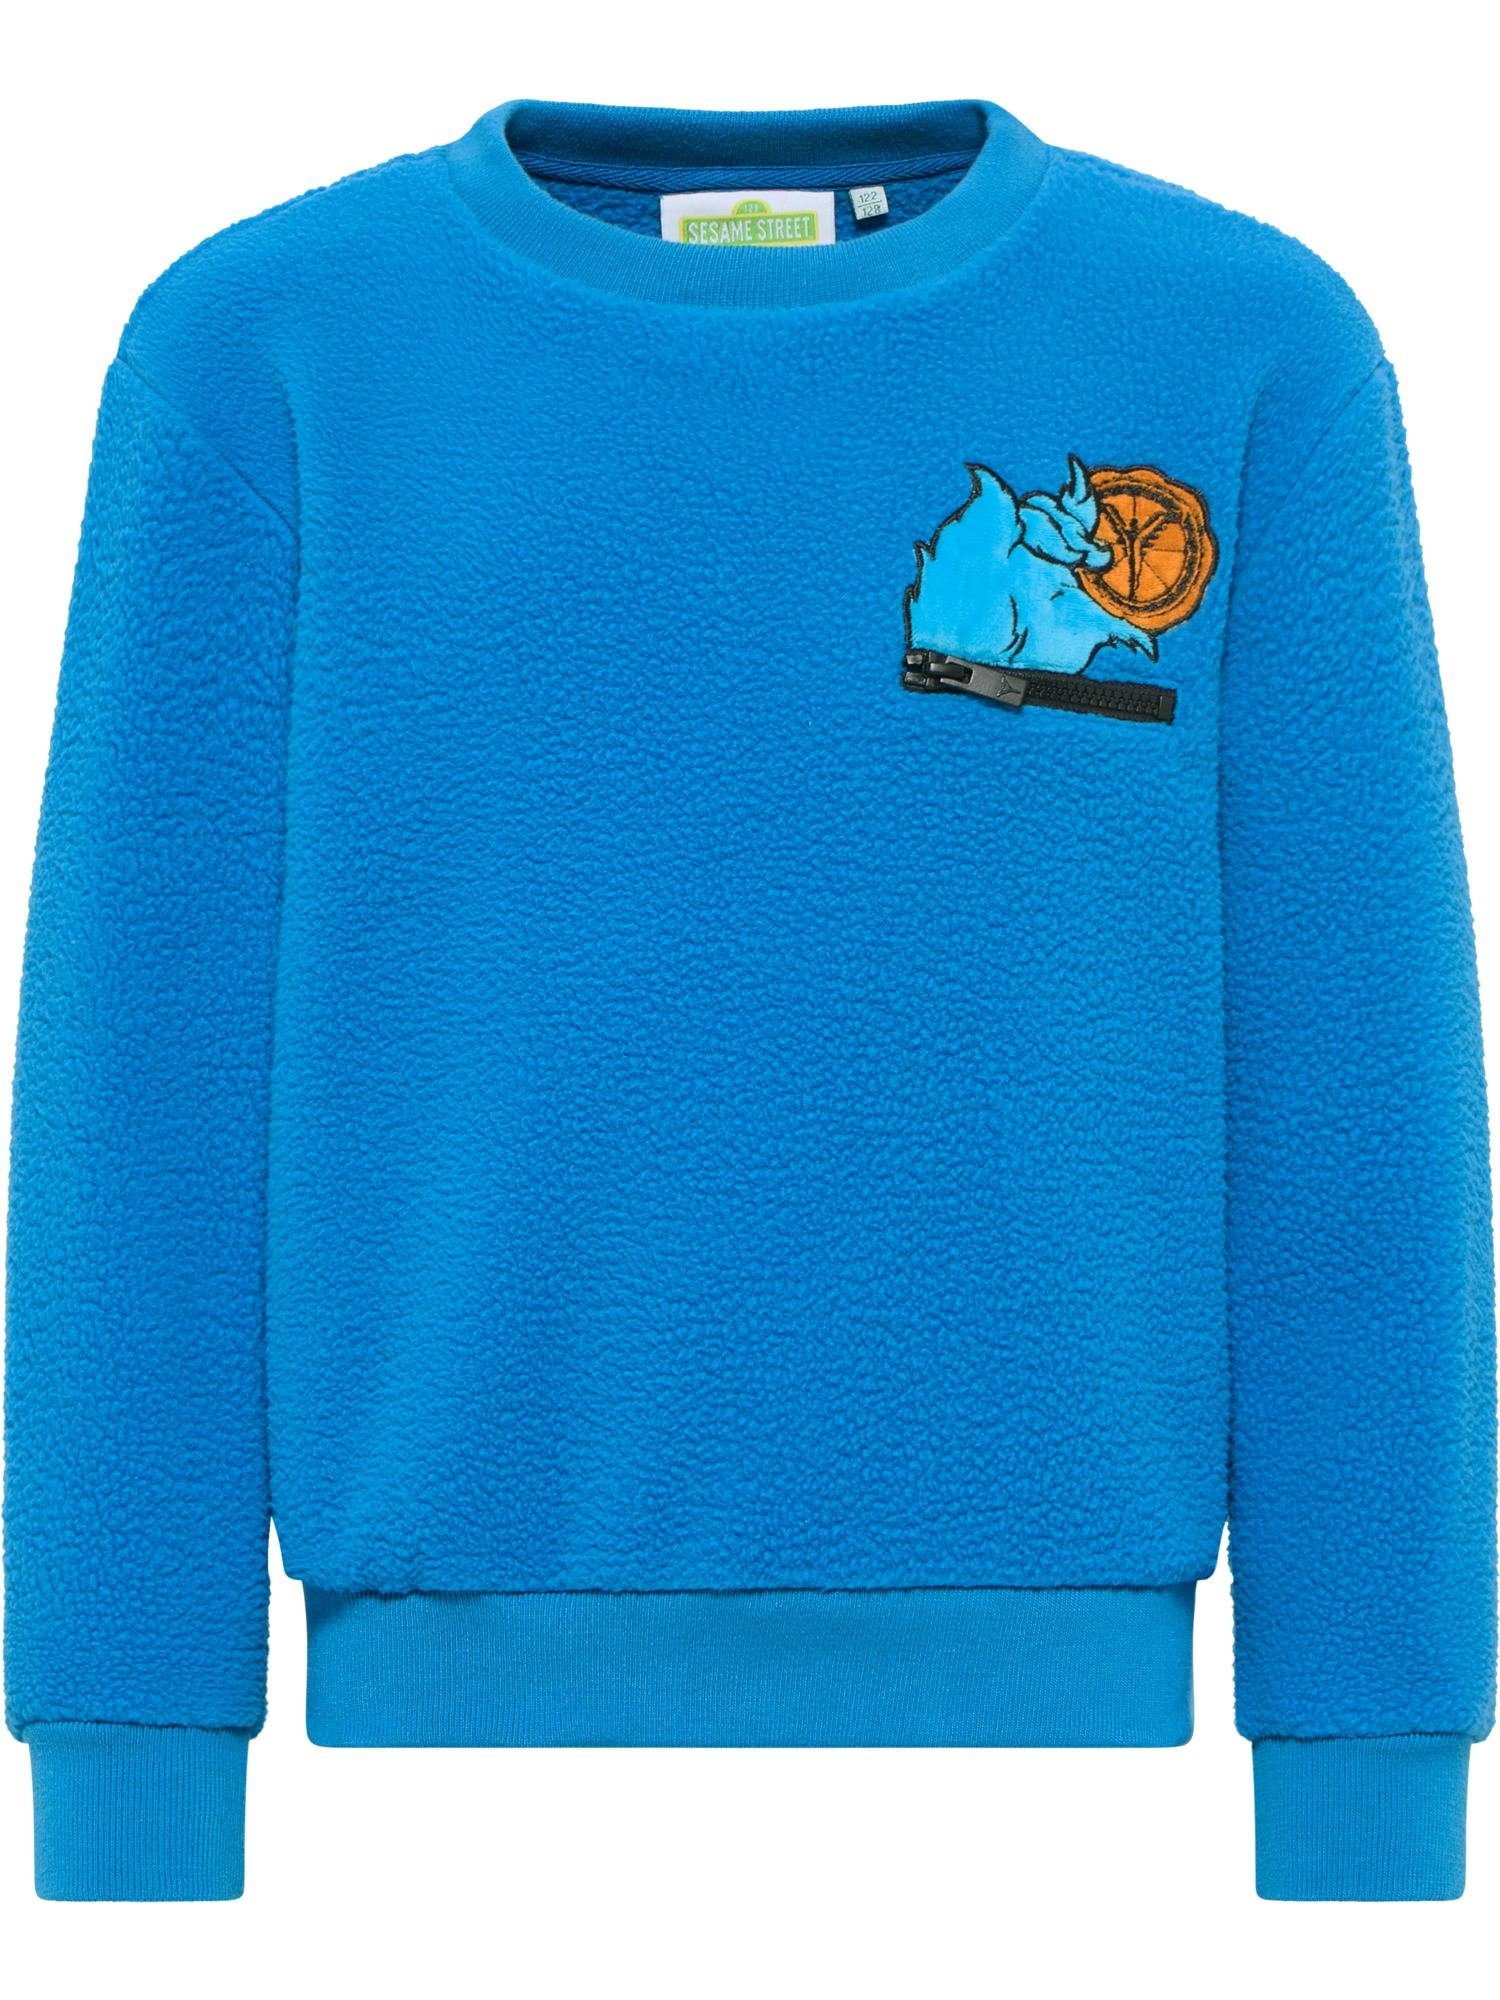 CARLO COLUCCI Sweatshirt Decker Blau